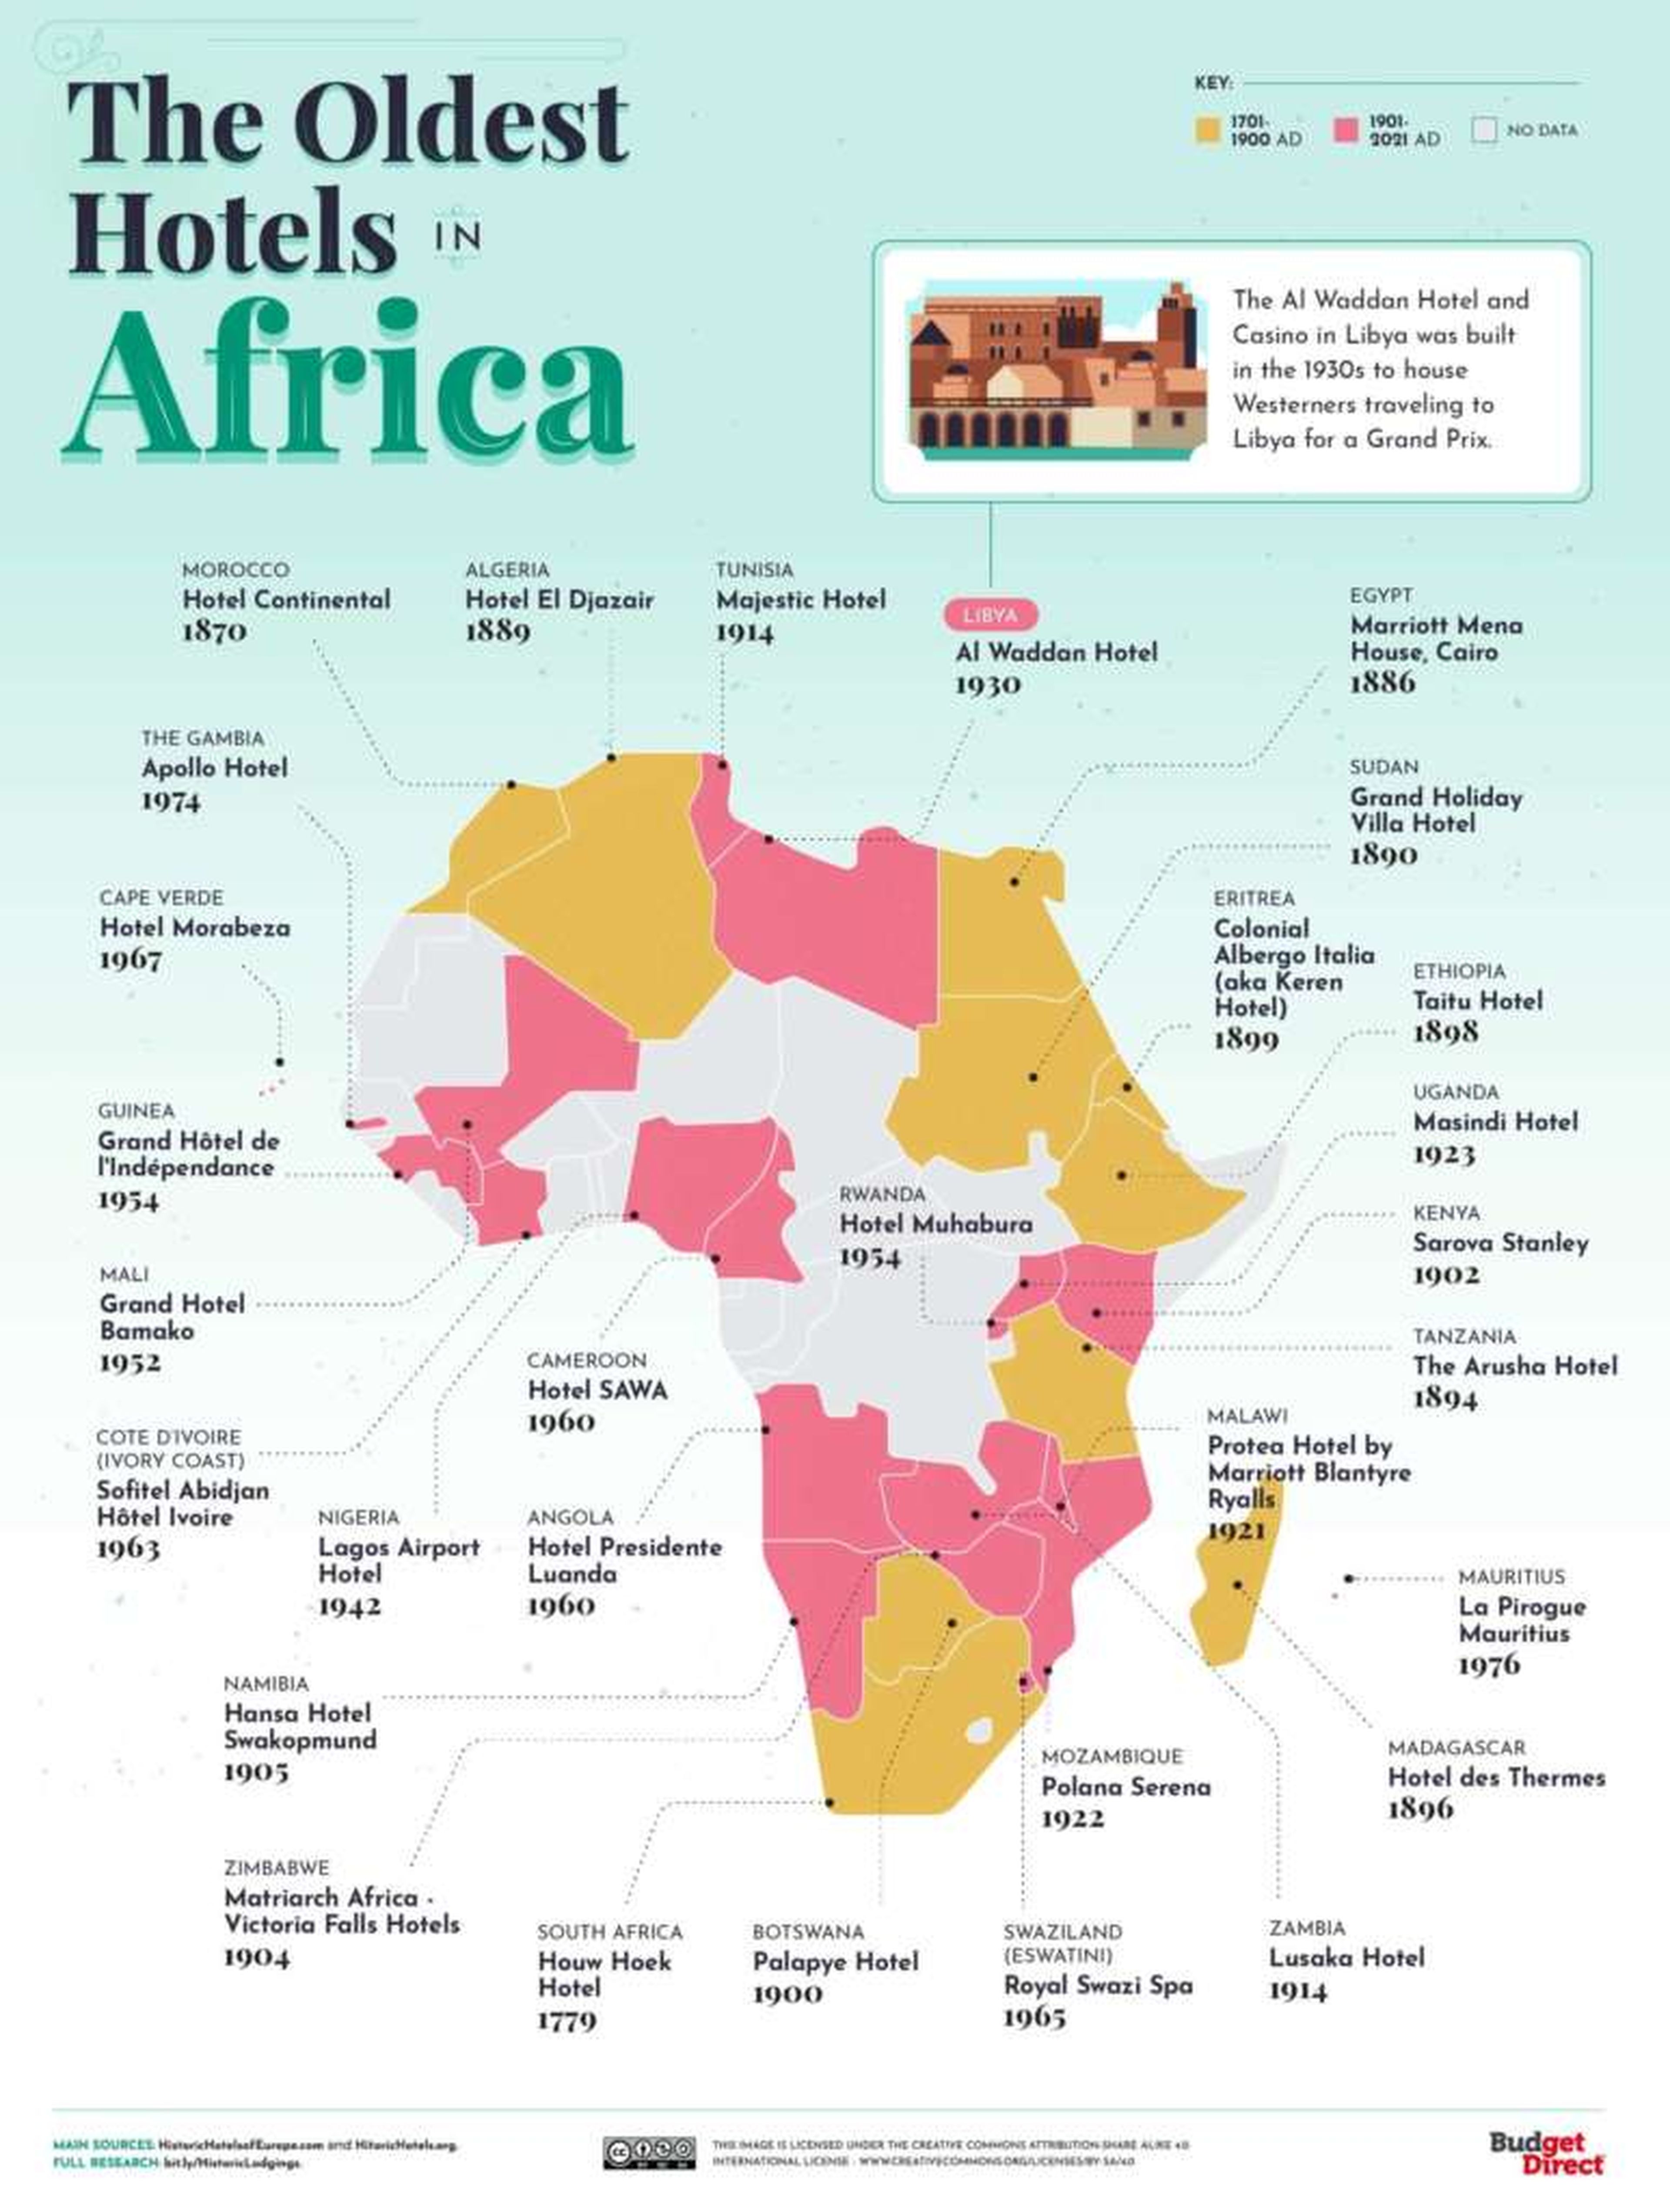 Los hoteles más antiguos de África (Budget Direct)